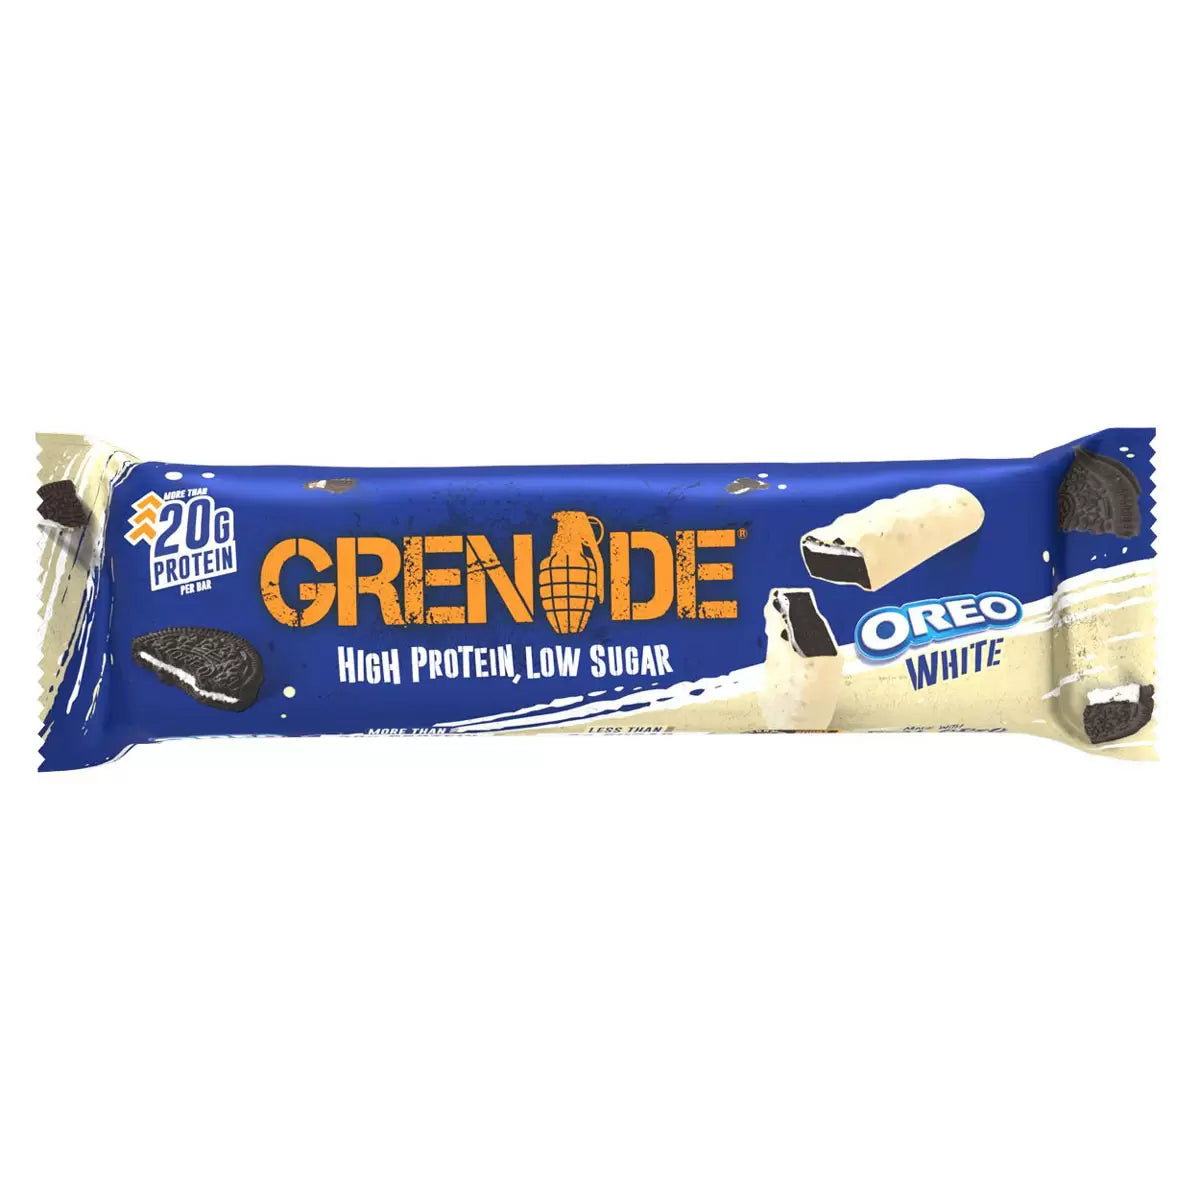 Grenade White Chocolate Oreo - 60g